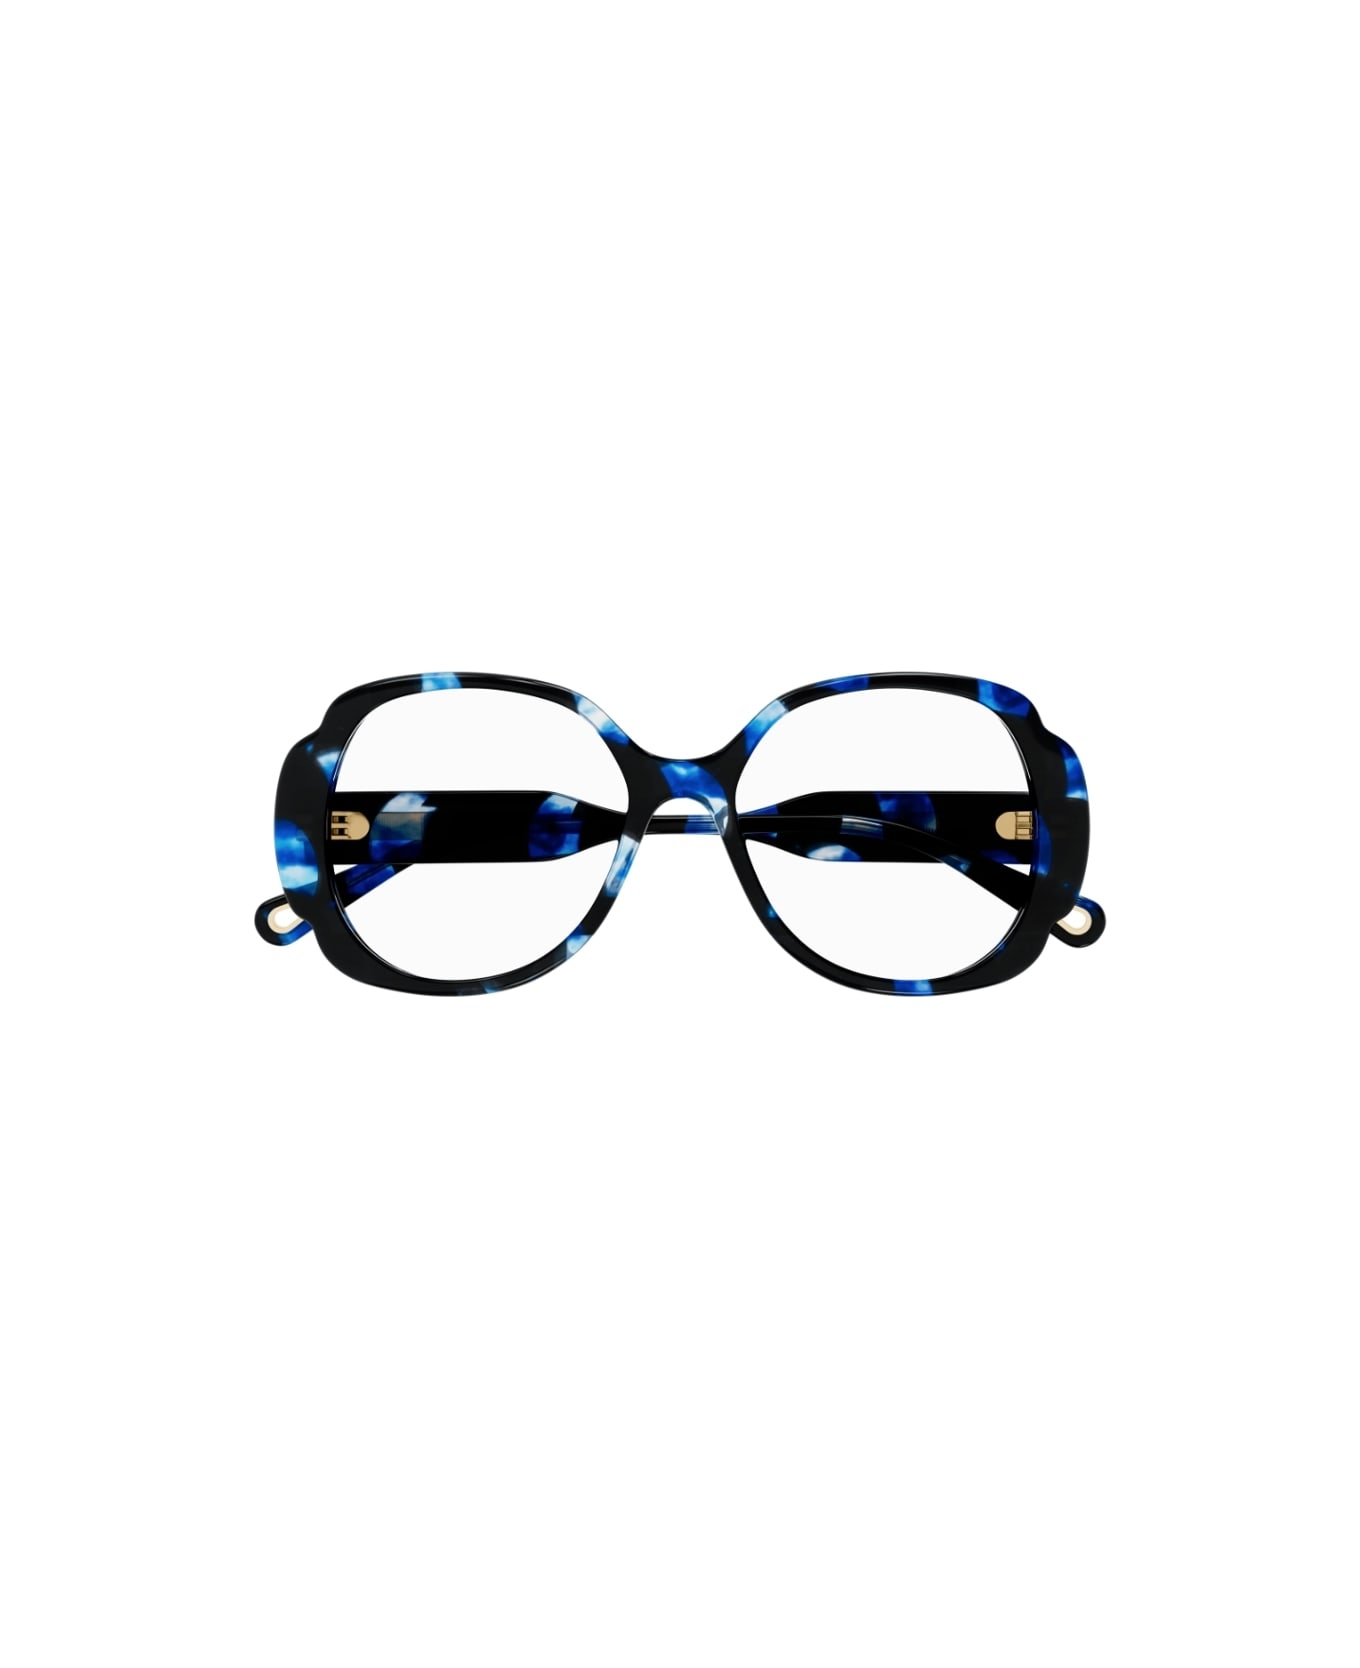 Chloé Eyewear CH0196O 004 Glasses アイウェア